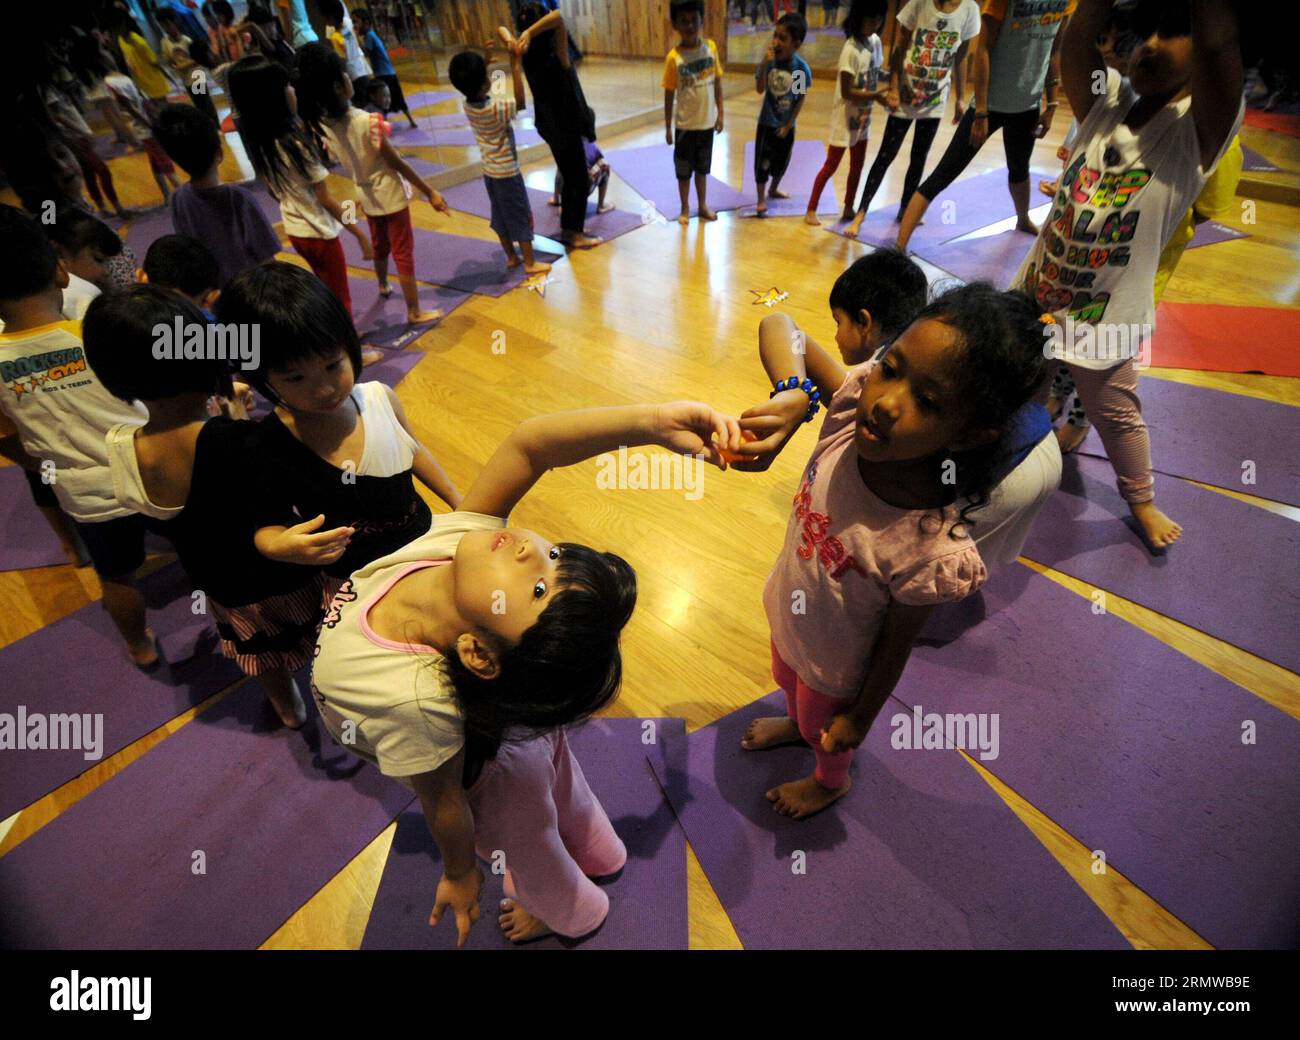 (141018) -- GIACARTA, 18 ottobre 2014 -- i bambini di età compresa tra 4 e 8 anni partecipano allo yoga per bambini presso la Rockstar Gym di Giacarta, Indonesia, 18 ottobre 2014. Yoga for Kids è stato progettato specificamente per i bambini che include pose per aumentare la forza, la flessibilità e la coordinazione. ) INDONESIA-GIACARTA-YOGA PER BAMBINI AGUNGXKUNCAHYAXB. PUBLICATIONxNOTxINxCHN Giacarta OCT 18 2014 bambini di età compresa tra 4 e 8 anni partecipano allo Yoga for Kids PRESSO LA Rock Star Gym di Giacarta Indonesia OCT 18 2014 Yoga for Kids È progettato specificamente per i bambini che include pose per aumentare la forza e la coordinazione Foto Stock